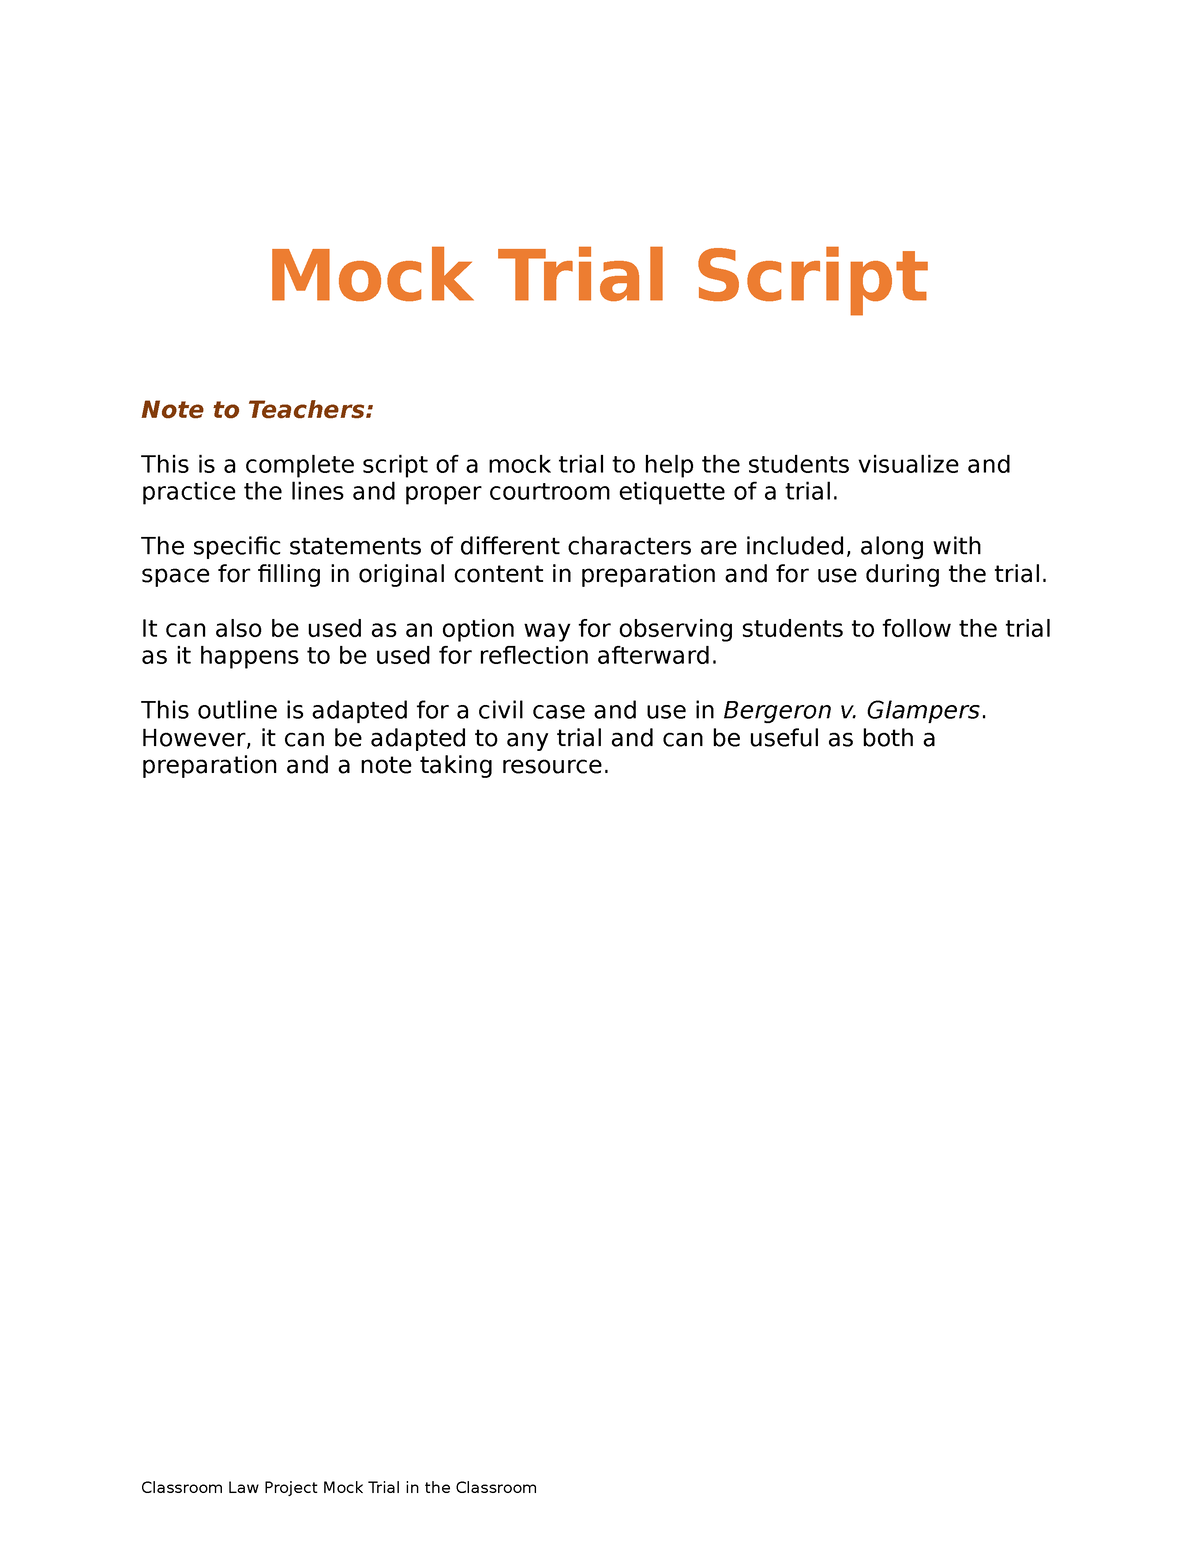 Mock Trial in the Classroom Full Mock Trial Script Mock Trial Script